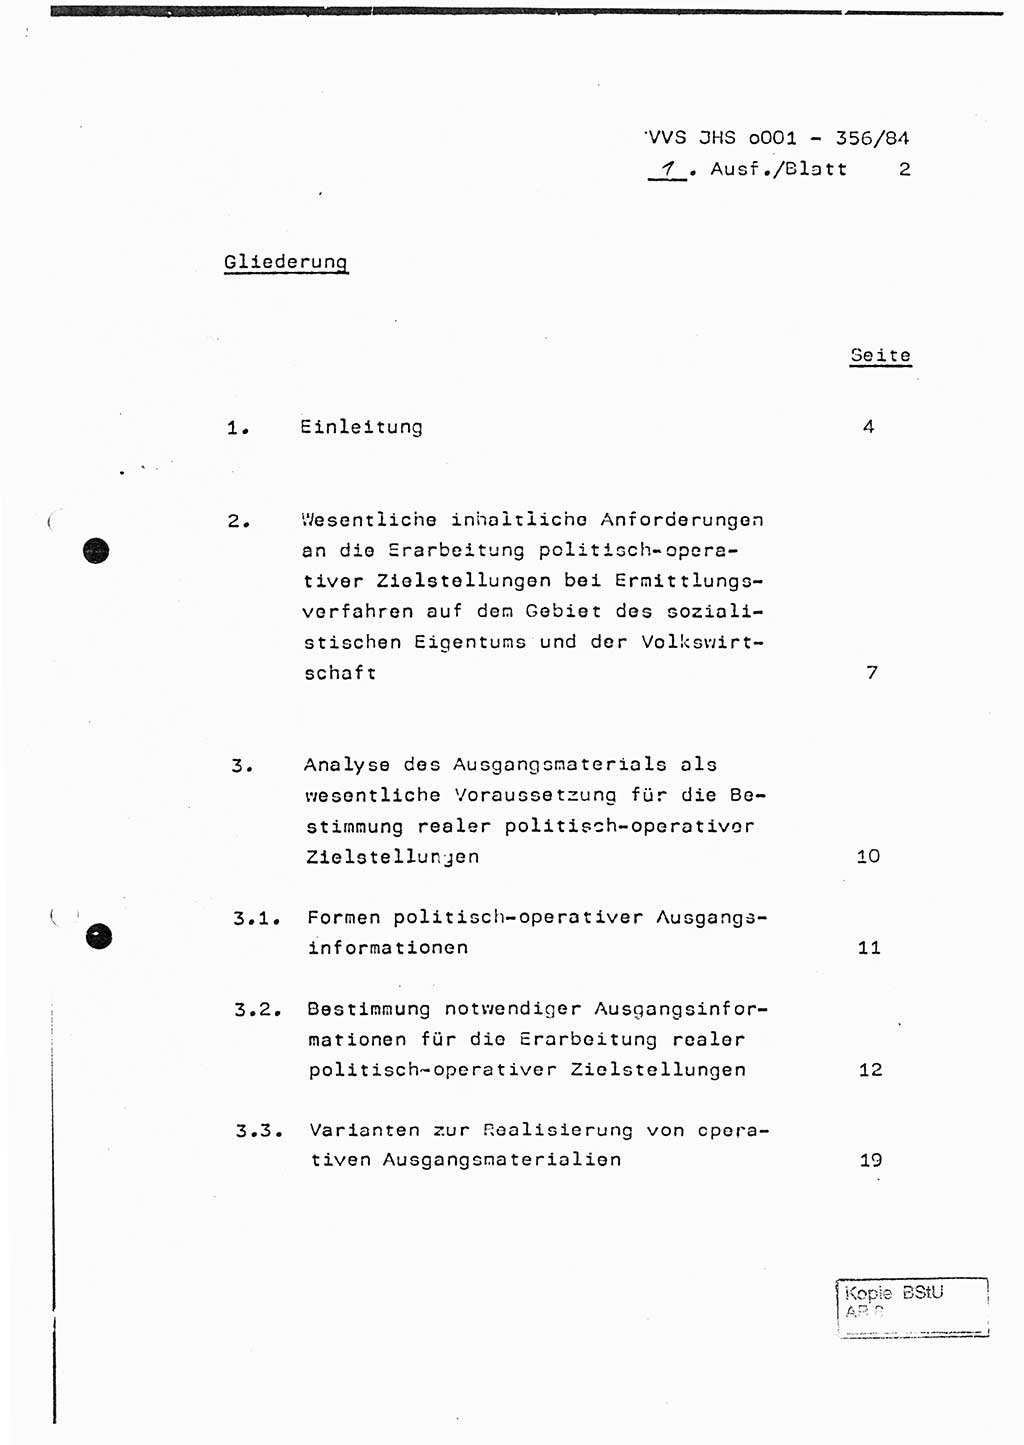 Diplomarbeit, Major Lutz Rahaus (HA Ⅸ/3), Ministerium für Staatssicherheit (MfS) [Deutsche Demokratische Republik (DDR)], Juristische Hochschule (JHS), Vertrauliche Verschlußsache (VVS) o001-356/84, Potsdam 1984, Seite 2 (Dipl.-Arb. MfS DDR JHS VVS o001-356/84 1984, S. 2)